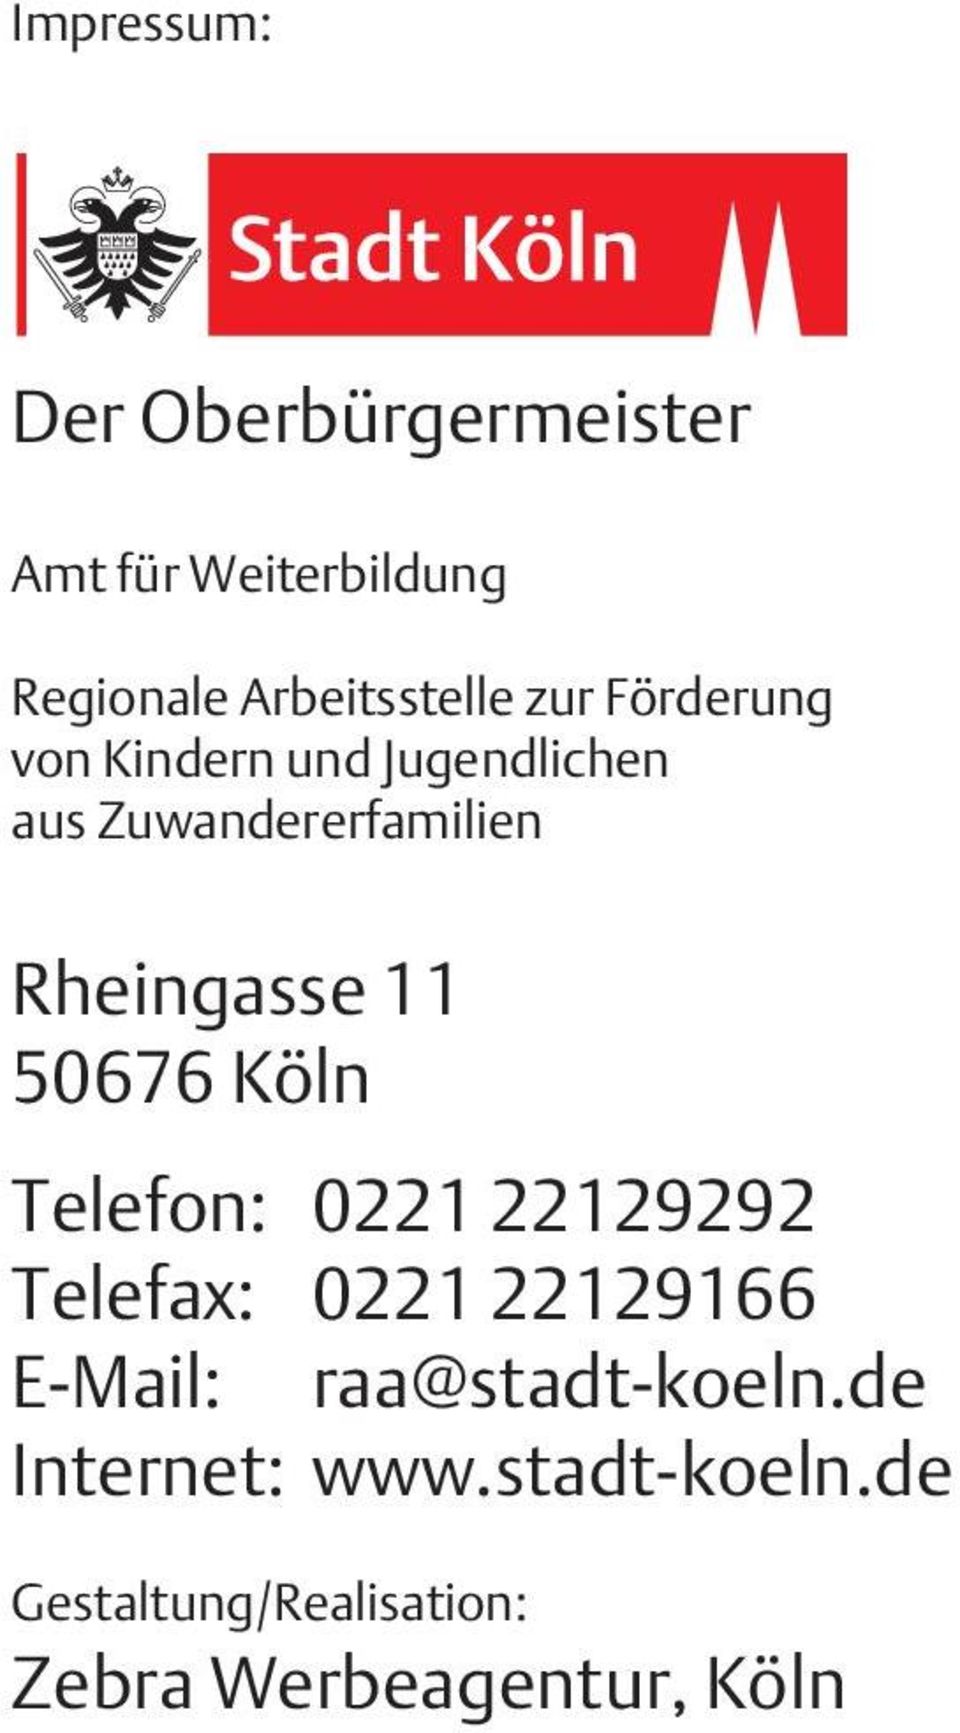 50676 Köln Telefon: 0221 22129292 Telefax: 0221 22129166 E-Mail: